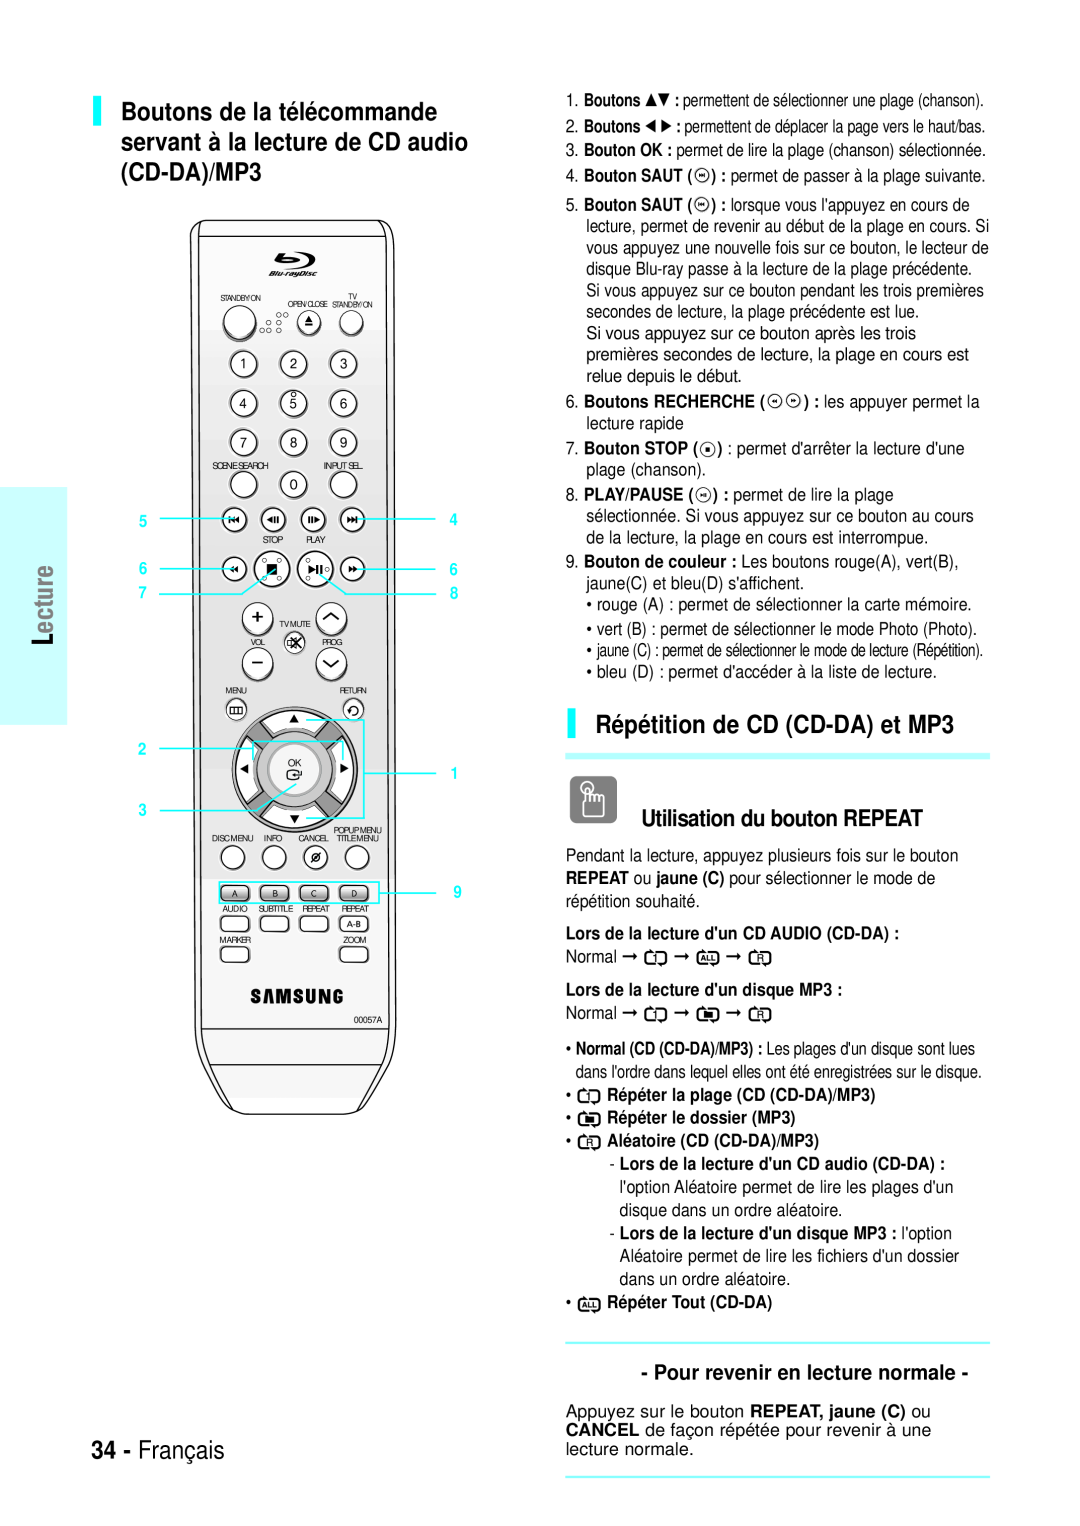 Samsung BD-P1000/XET Boutons de la télécommande servant à la lecture de CD audio CD-DA/MP3, Répétition de CD CD-DA et MP3 